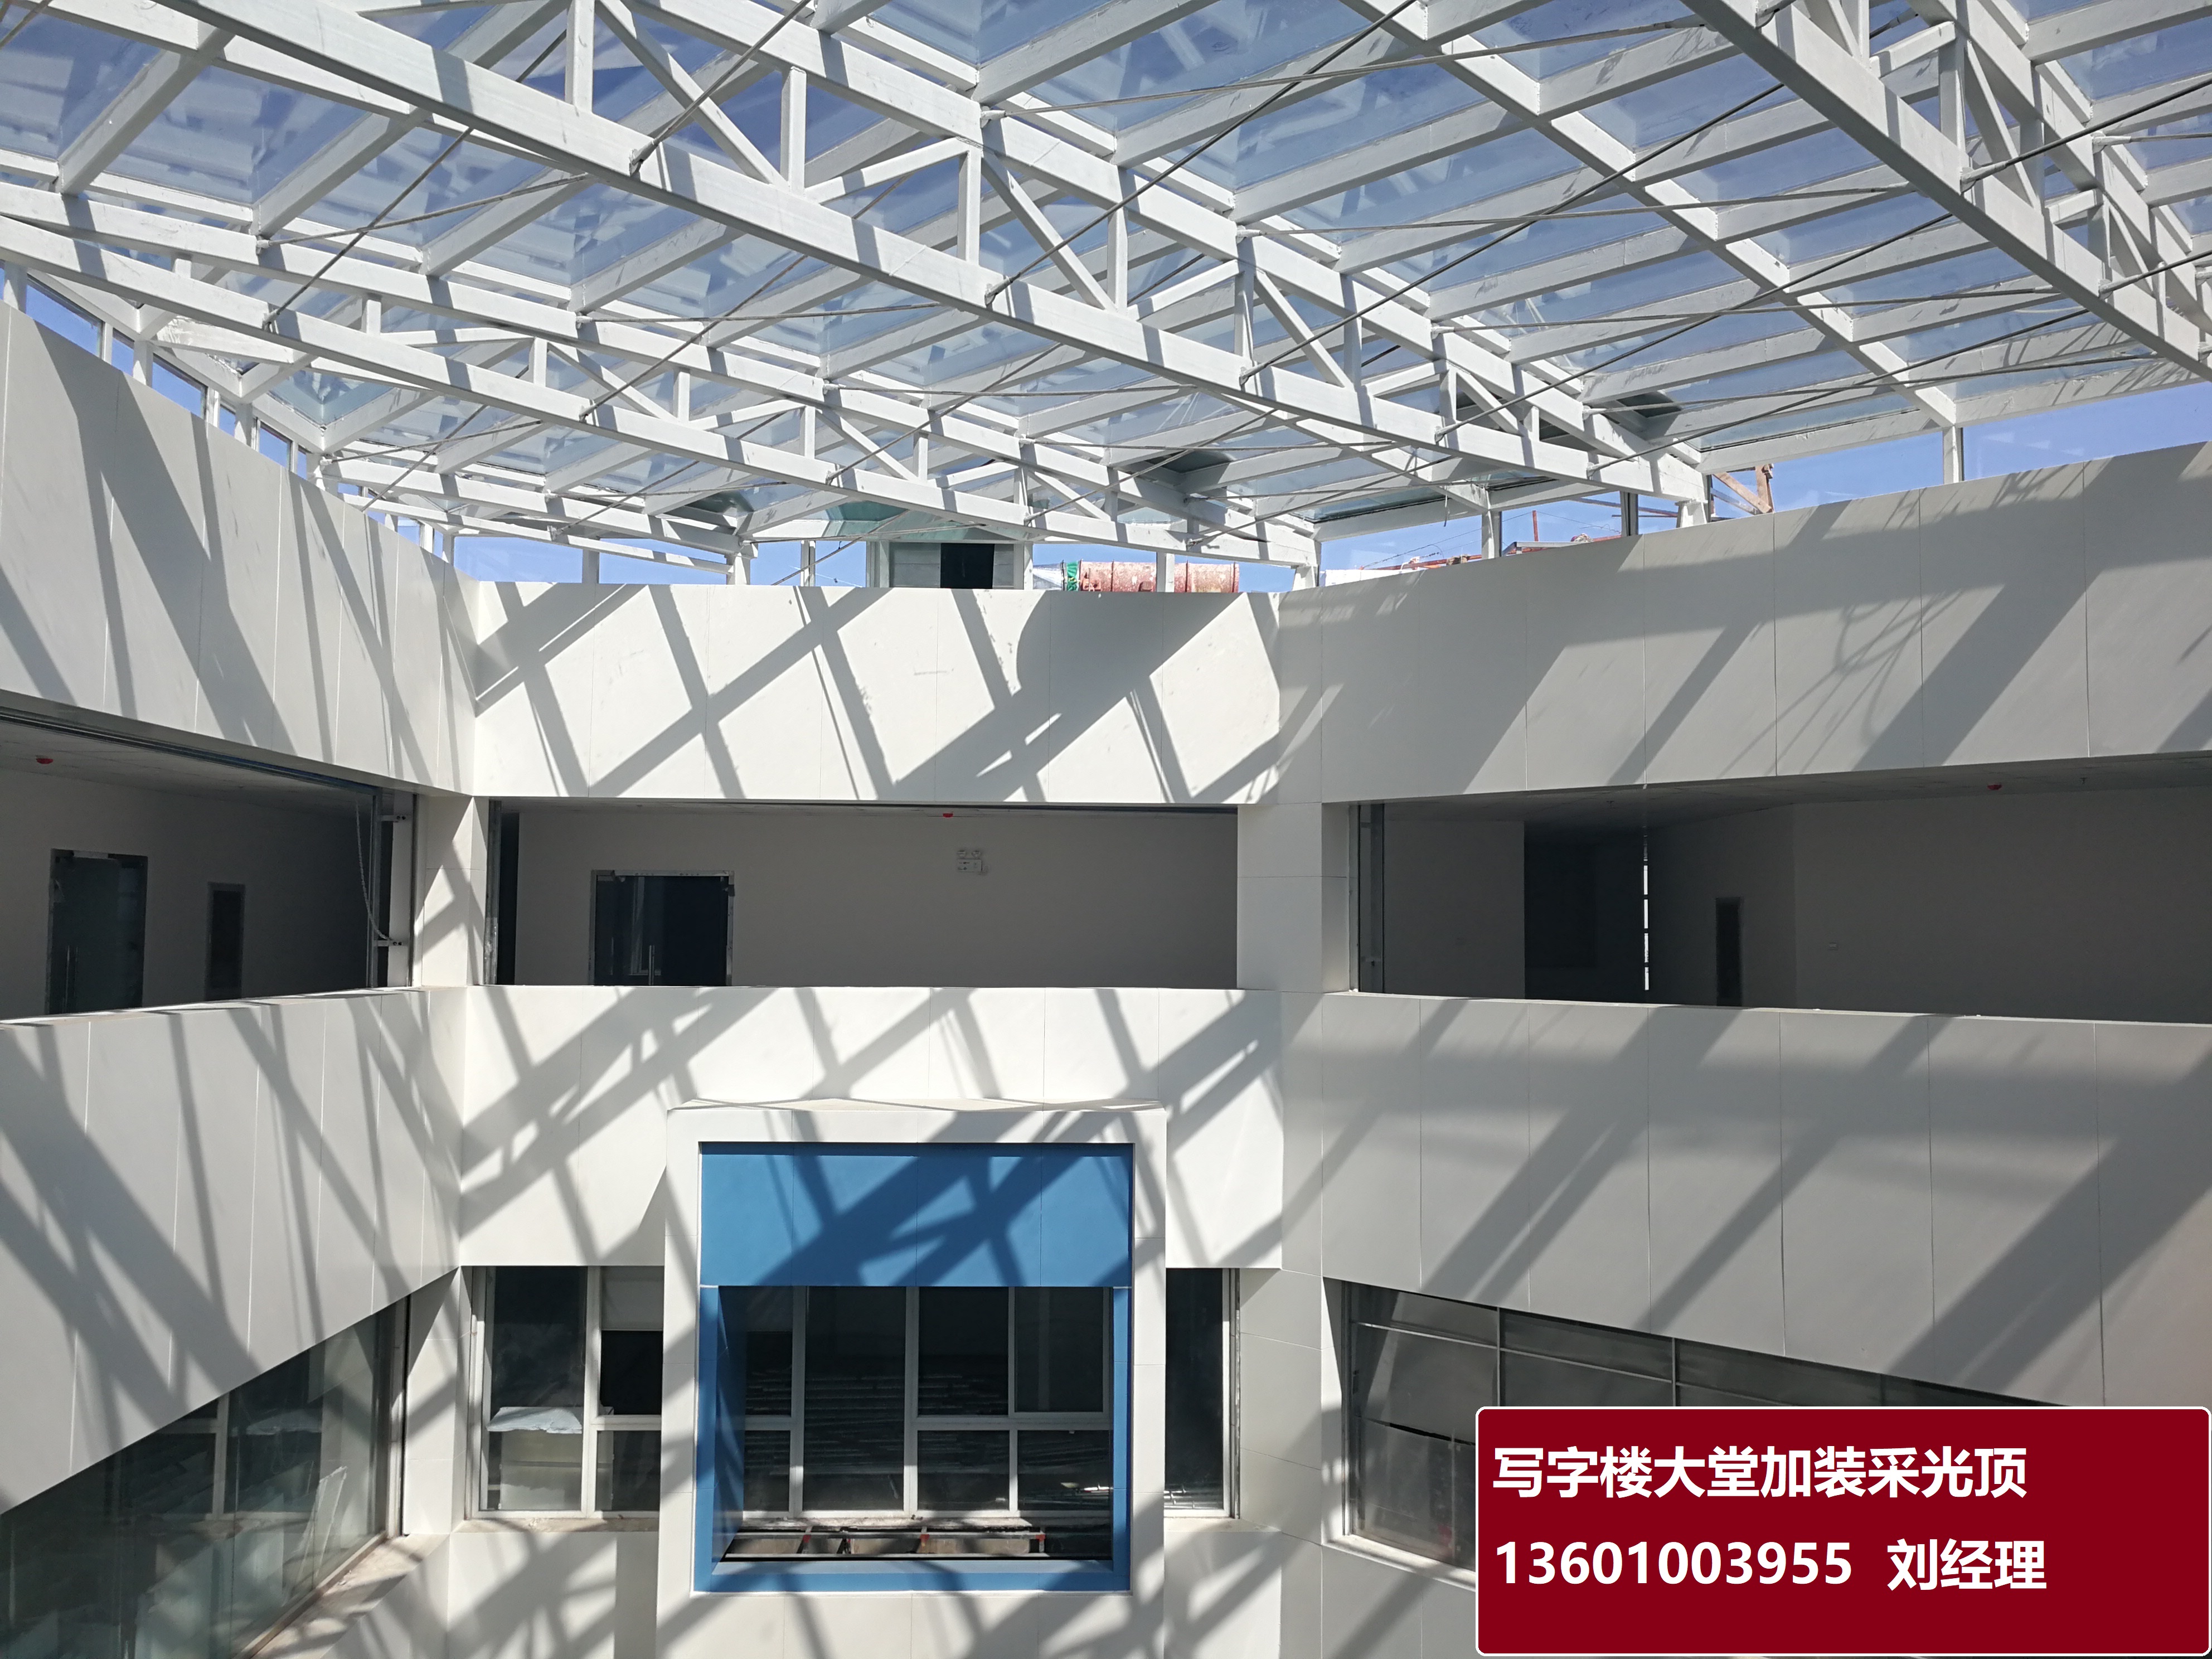 旧楼改造价格_老旧小区工程施工工程-北京鸿路北方建材销售中心